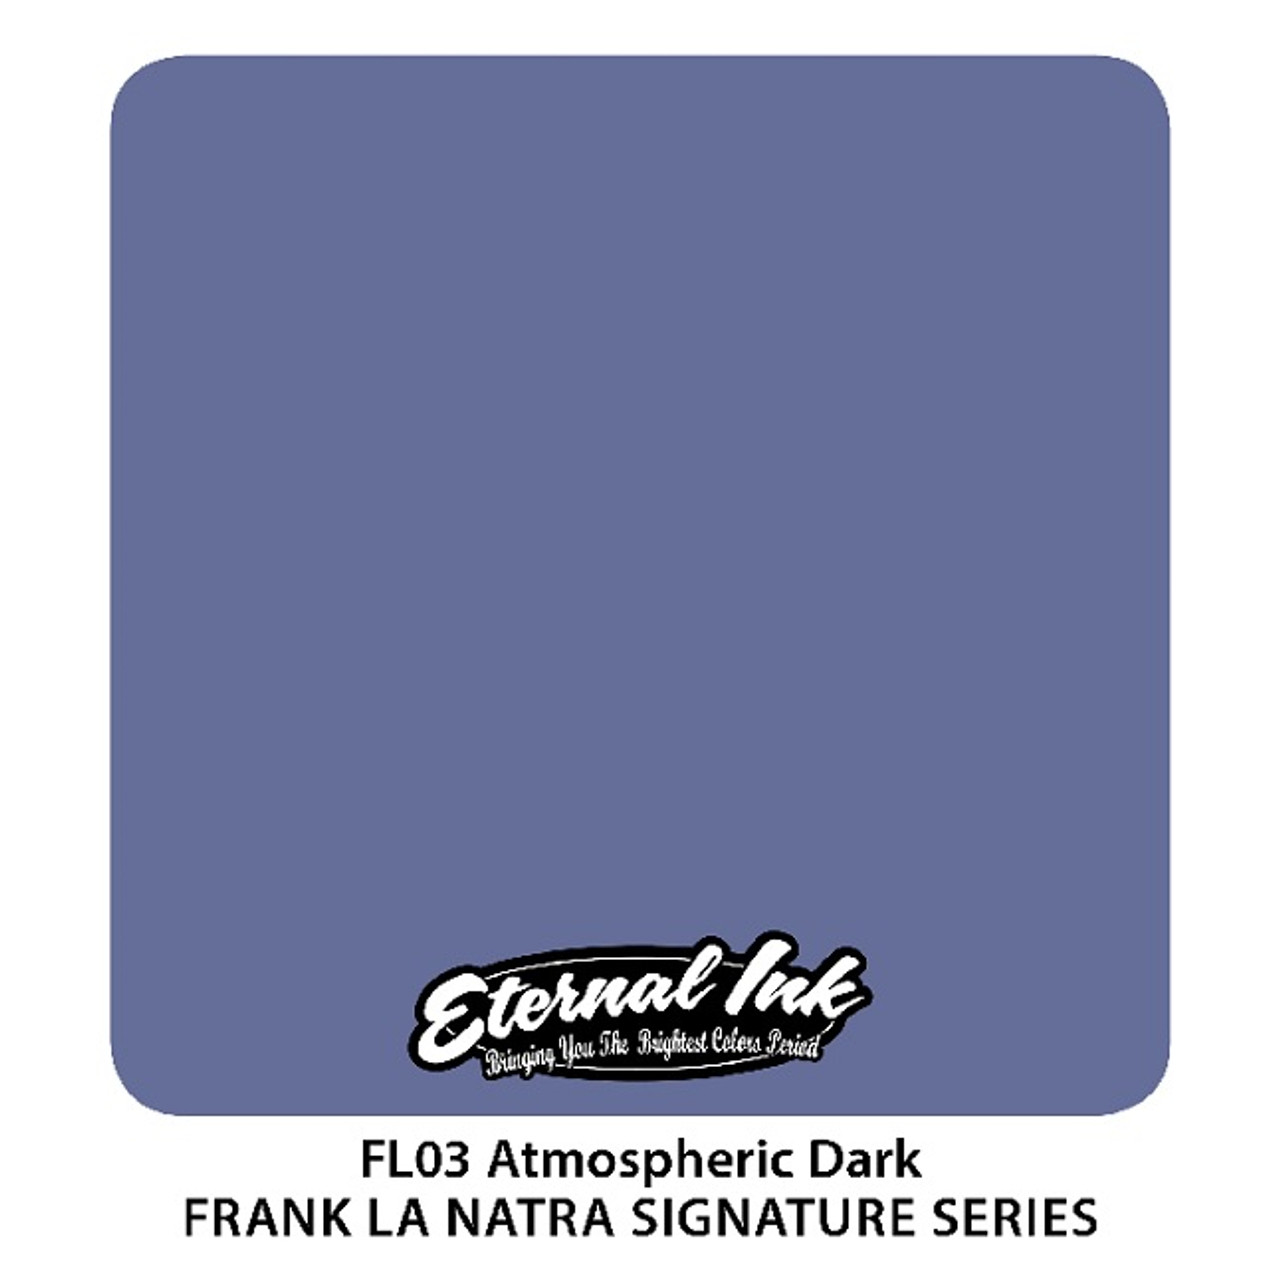 Frank La Natra Atmospheric Dark, 1oz.